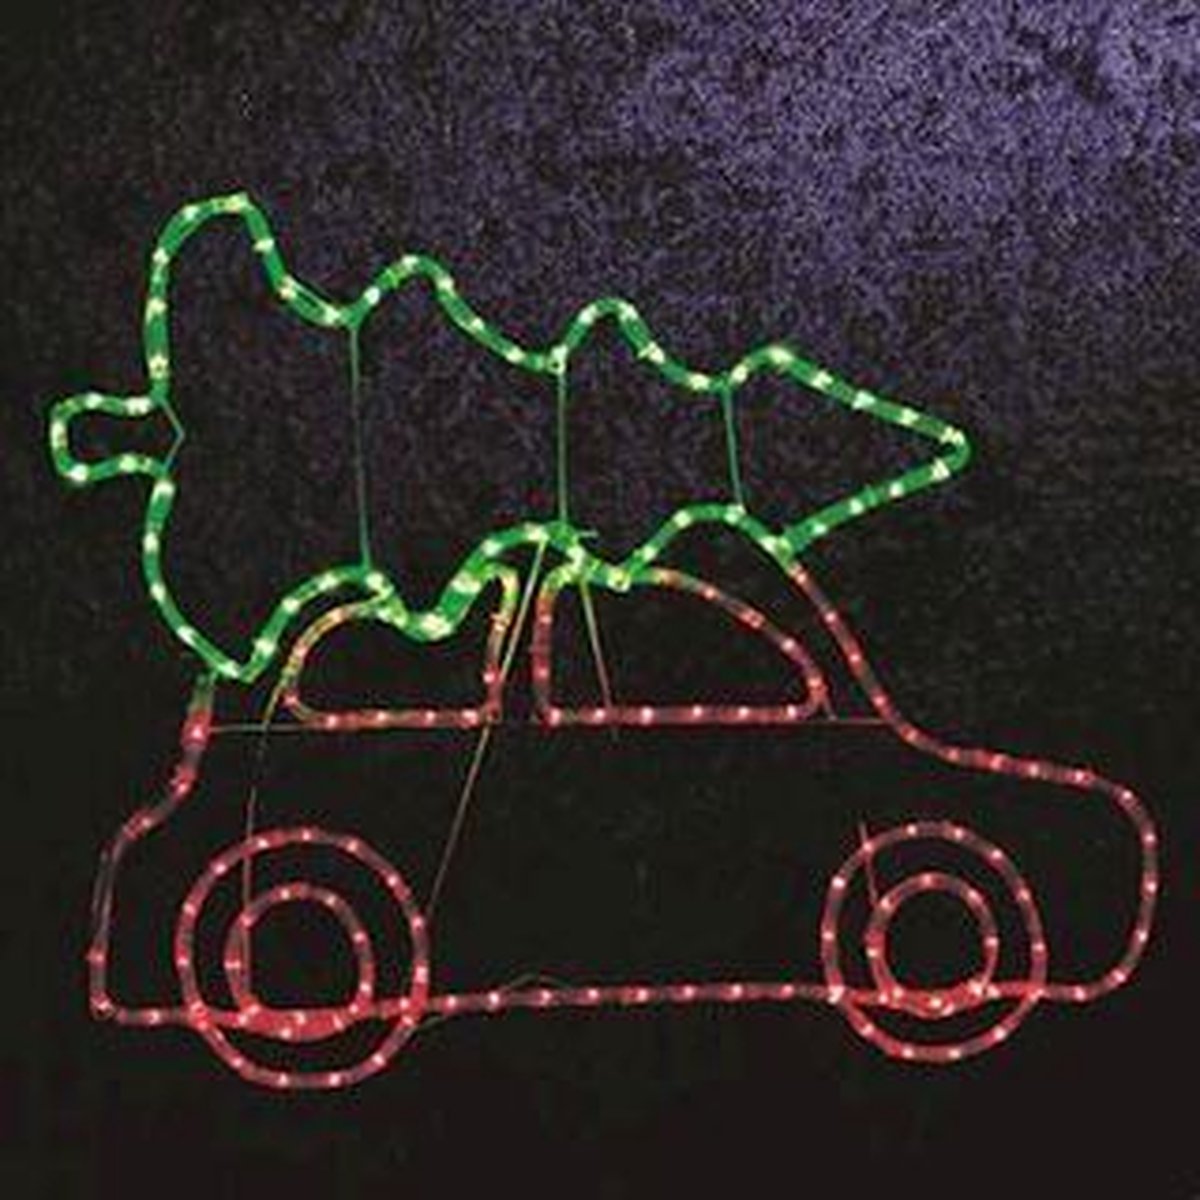 Kerstdeco led-verlichting - auto met kerstboom (buitenshuis) - Slangenverlichting 98 x 72cmhoog